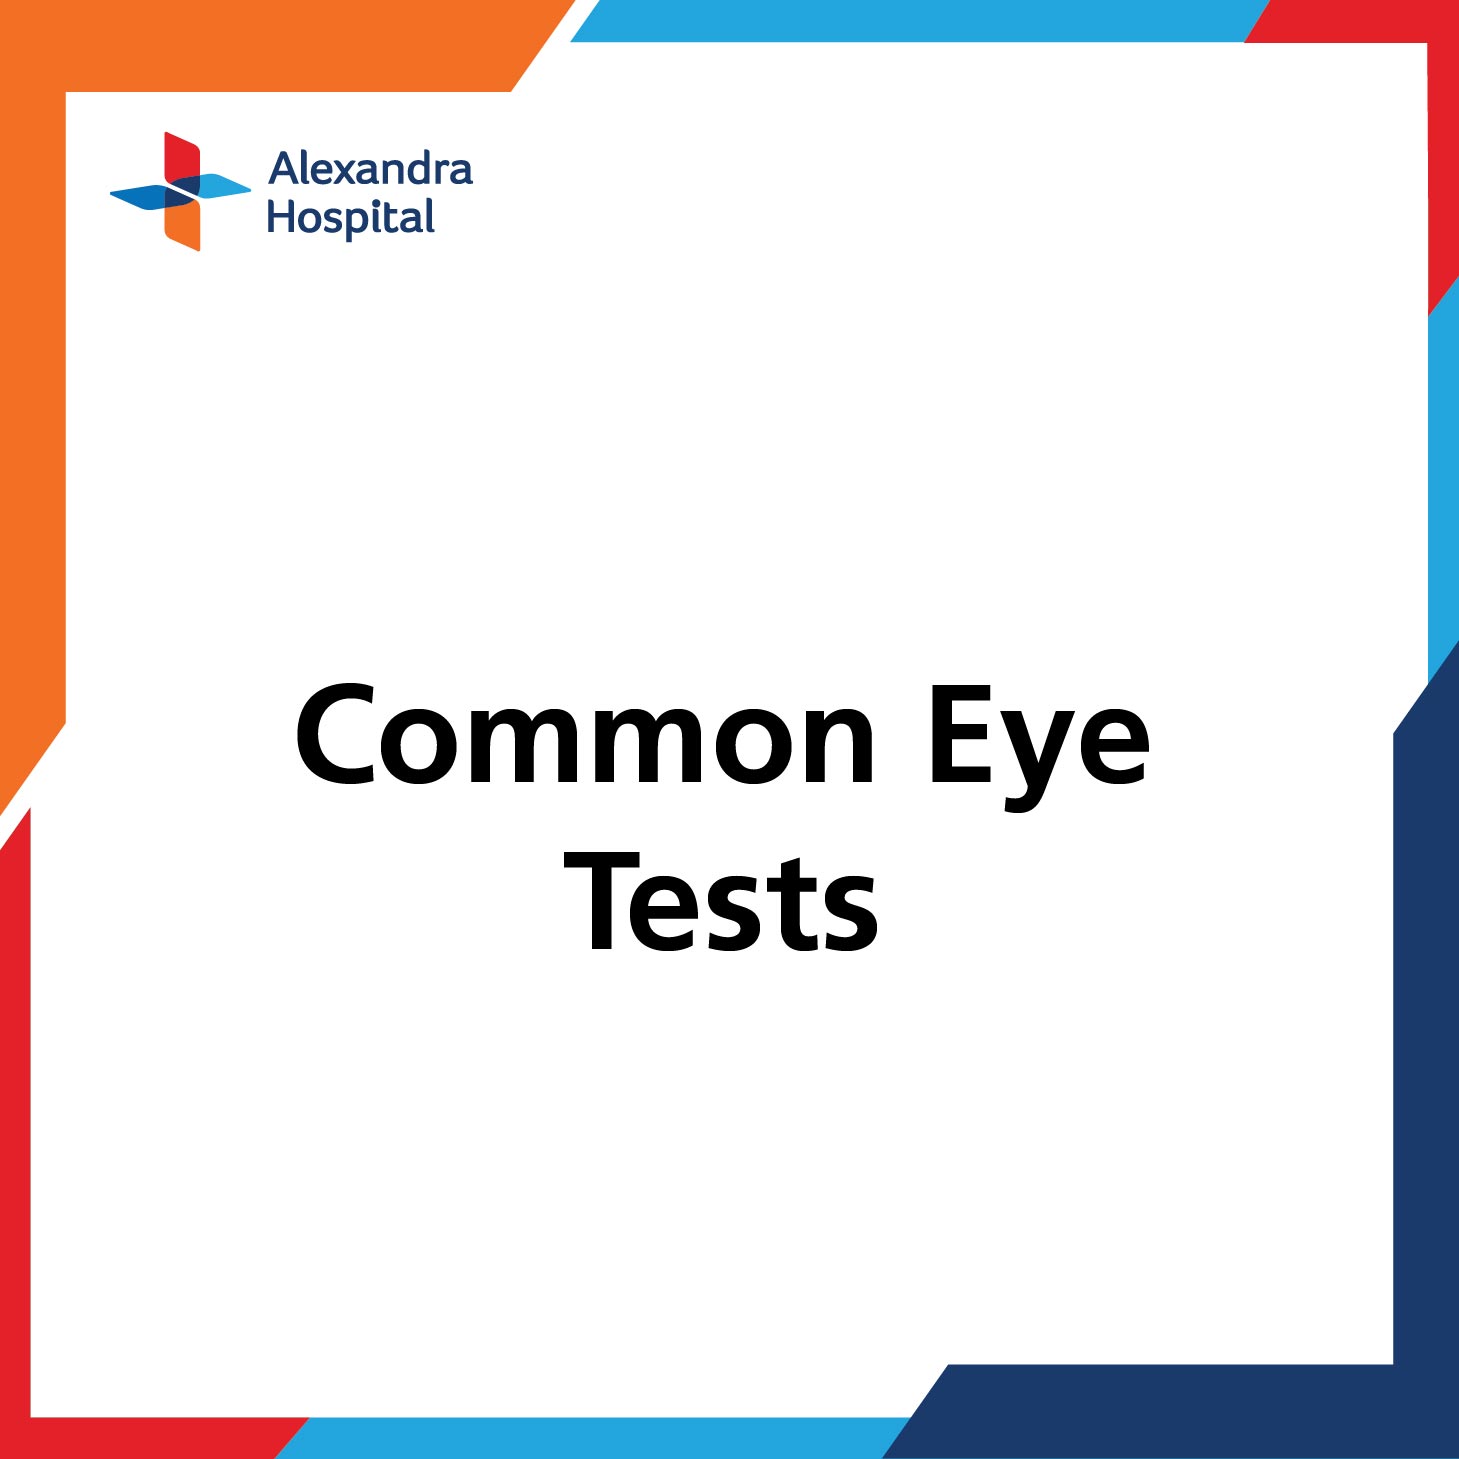 Common Eye Tests